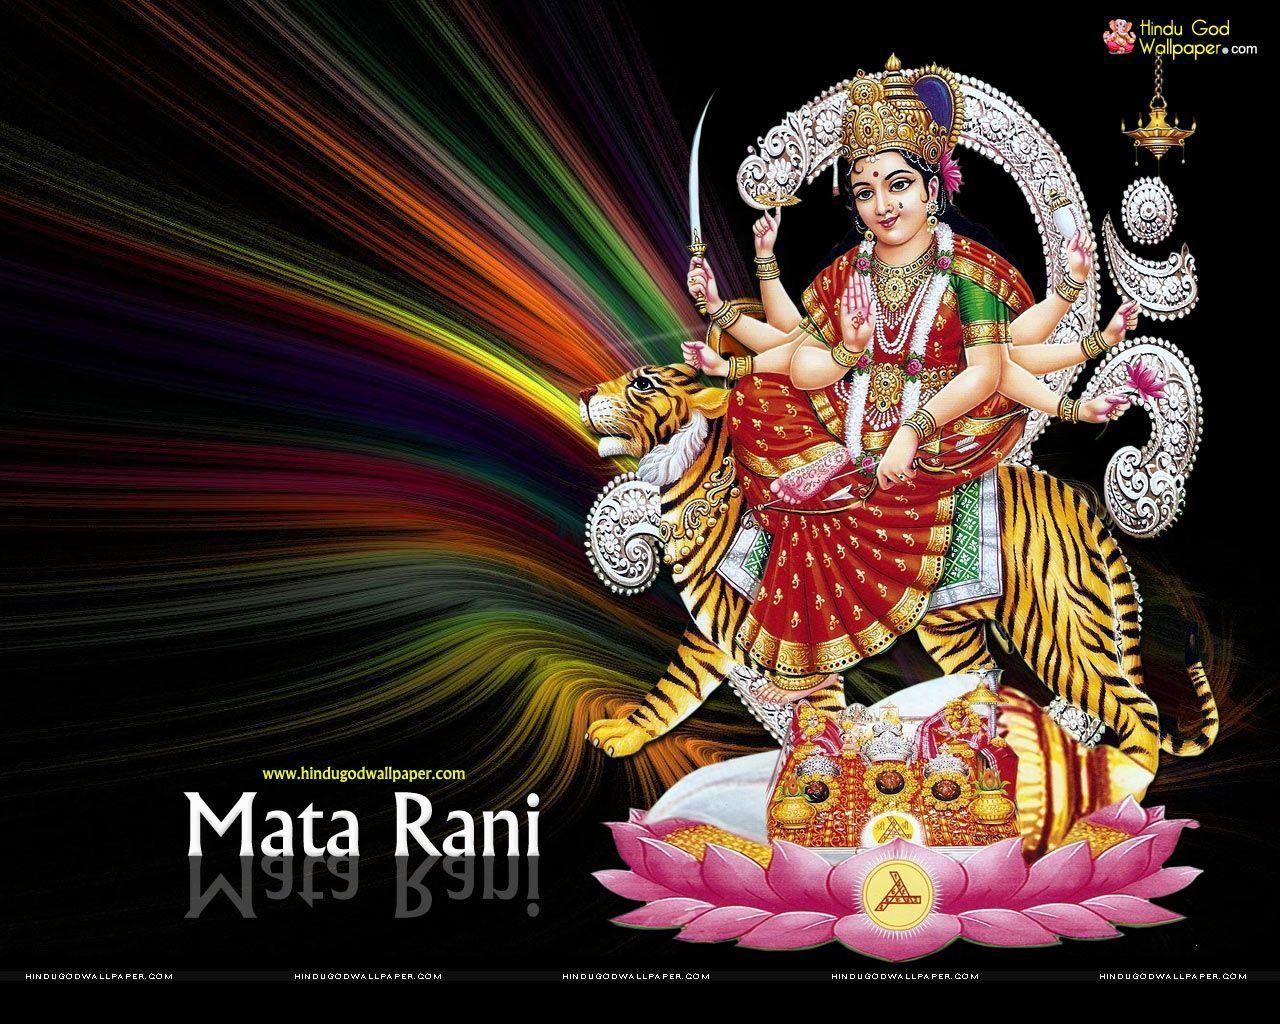 Mata Rani HD Wallpaper Free Download. Durga maa